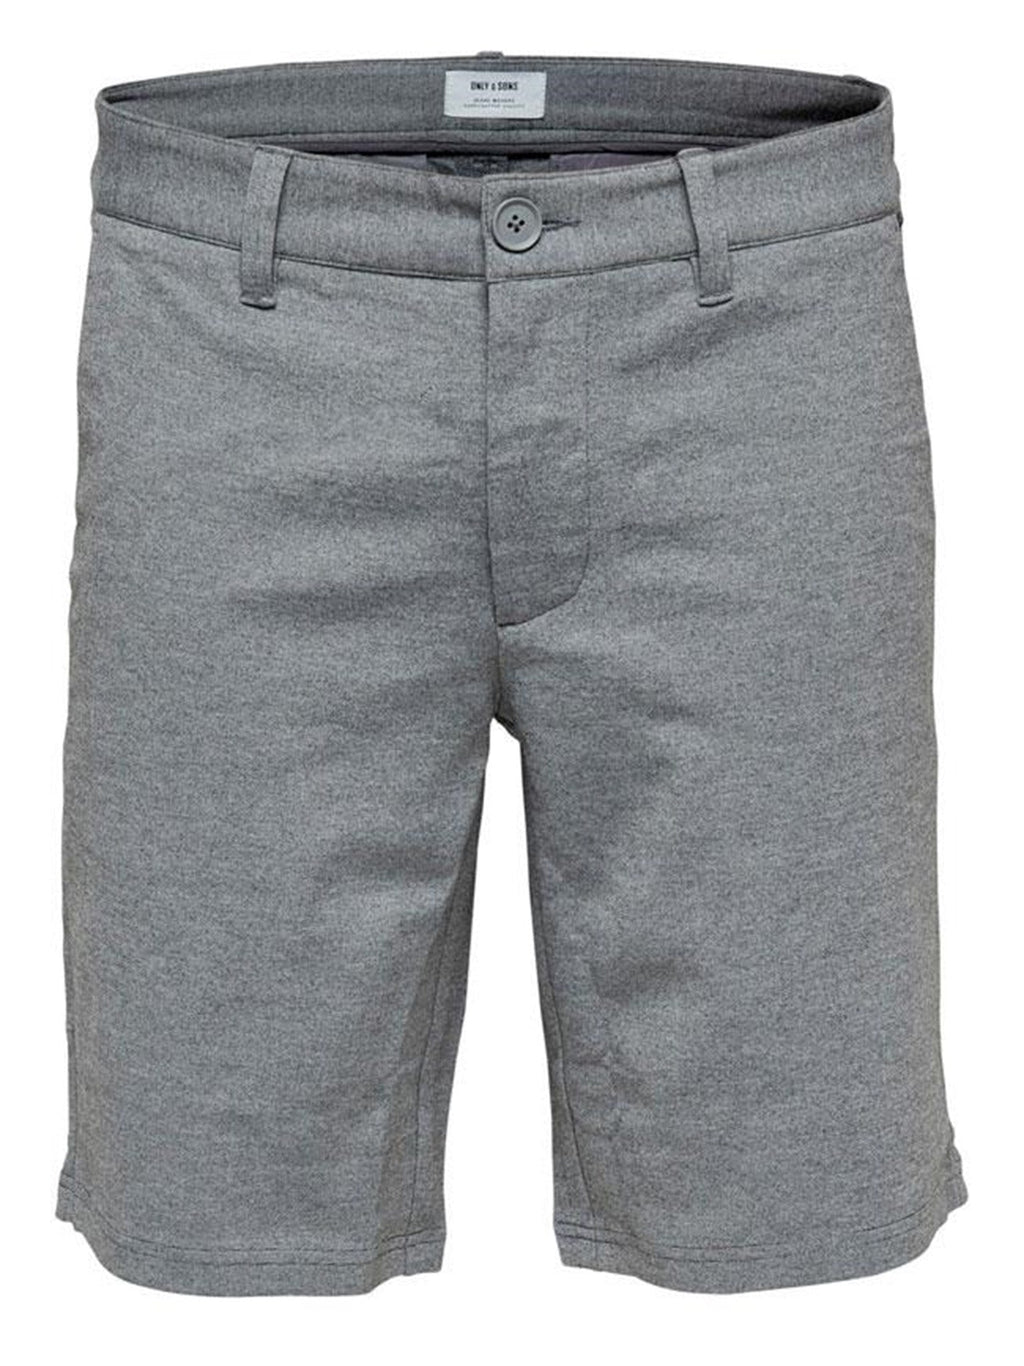 Mark kratke hlače - svijetlo sive